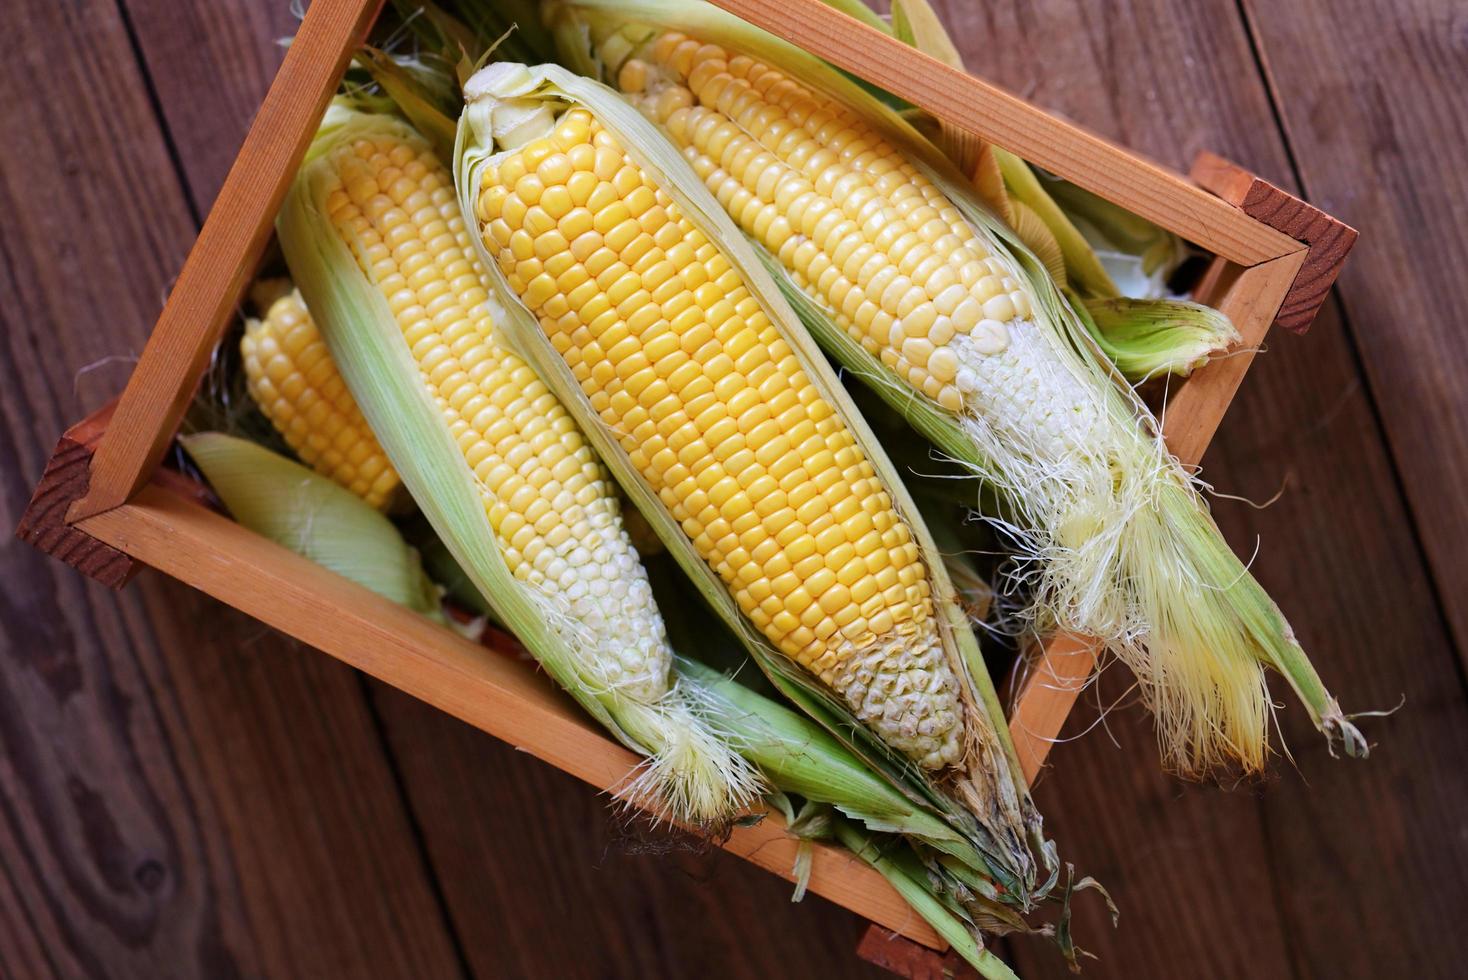 maíz en mazorca, maíz dulce para cocinar alimentos - maíz fresco en caja de madera, cosecha de maíz maduro orgánico foto